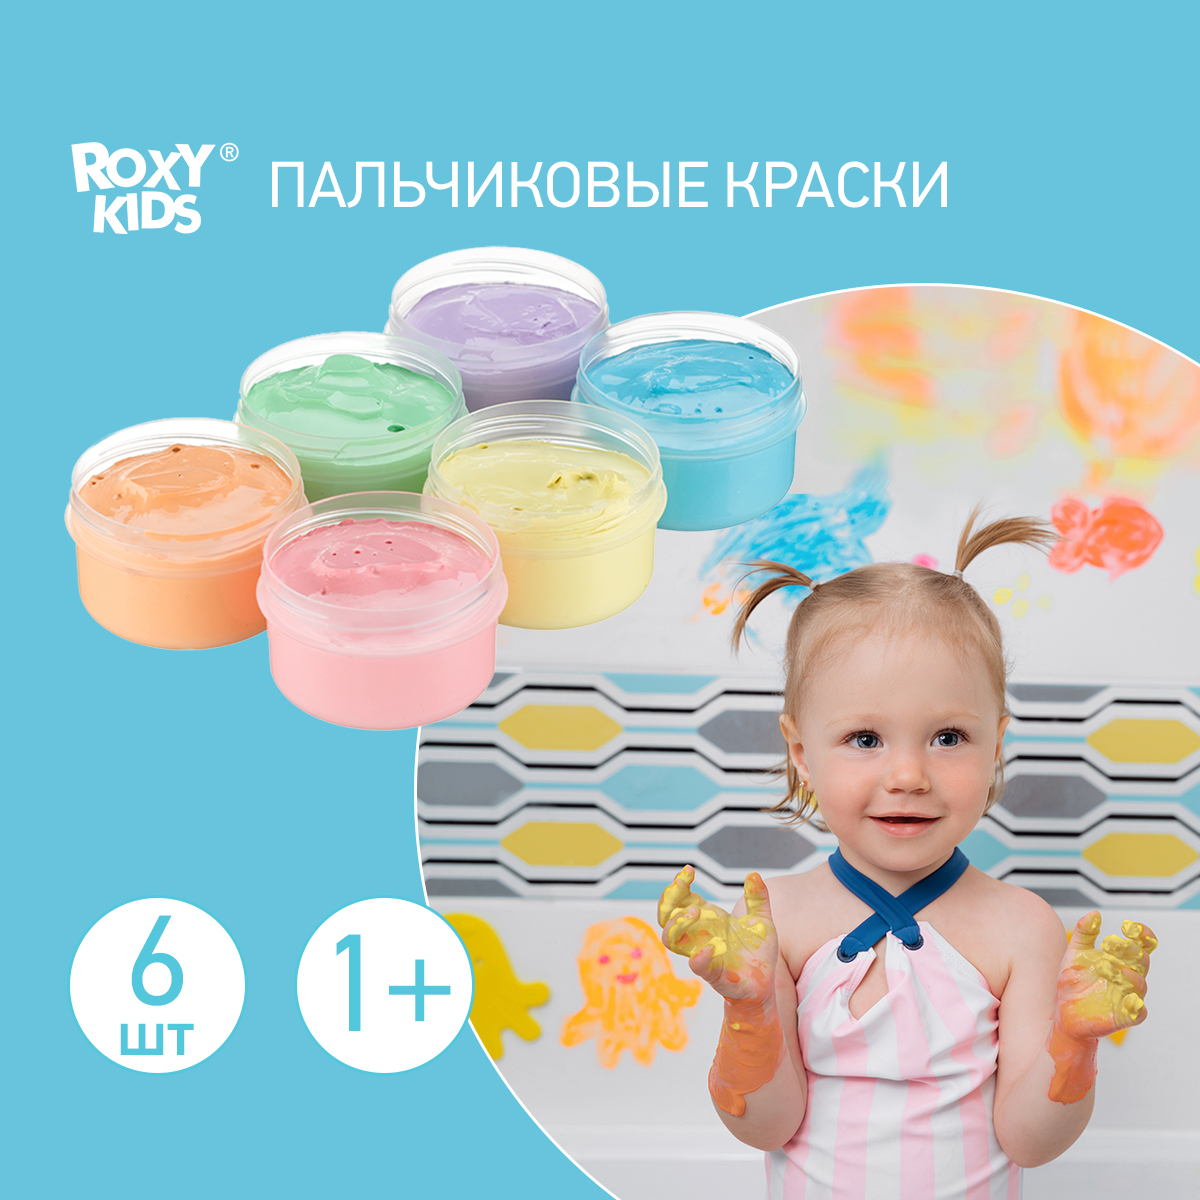 Пальчиковые краски ROXY-KIDS для малышей 6 цветов по 60 мл + обучающая брошюра - фото 1